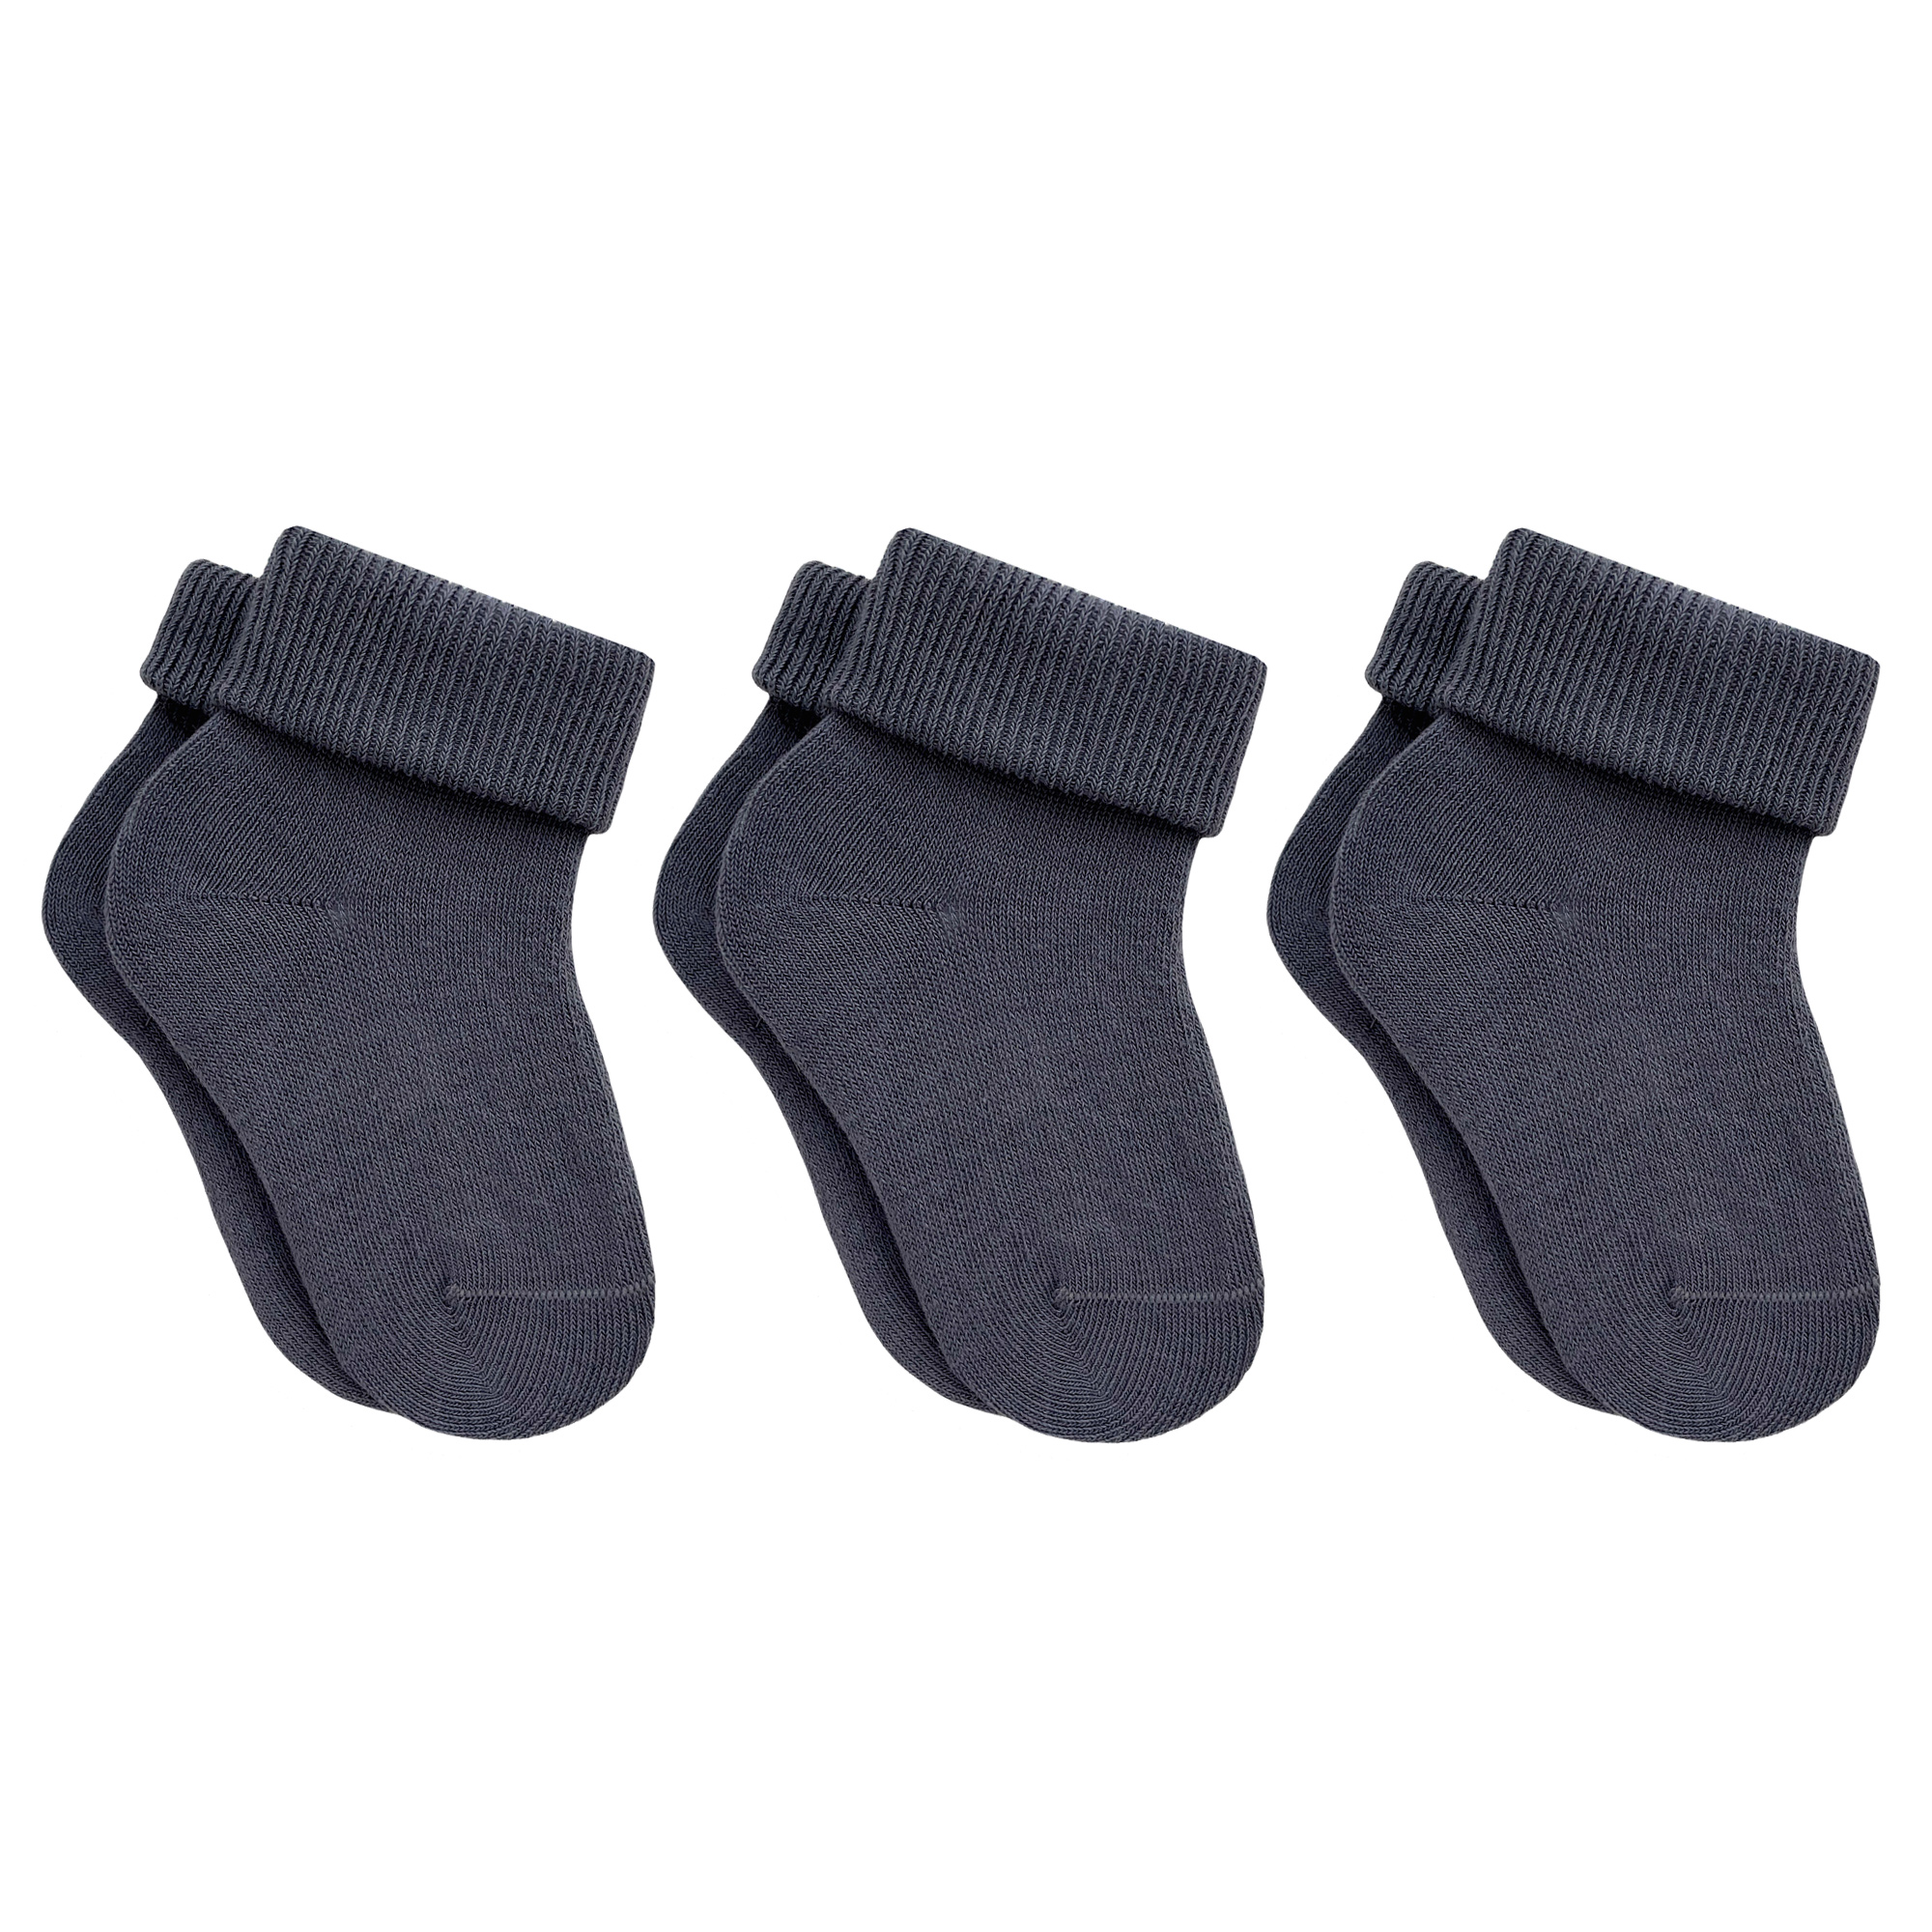 Носки детские Rusocks 3-Д3-13783М цв. серый р. 20-22 носки однотонные st friday socks серые серый